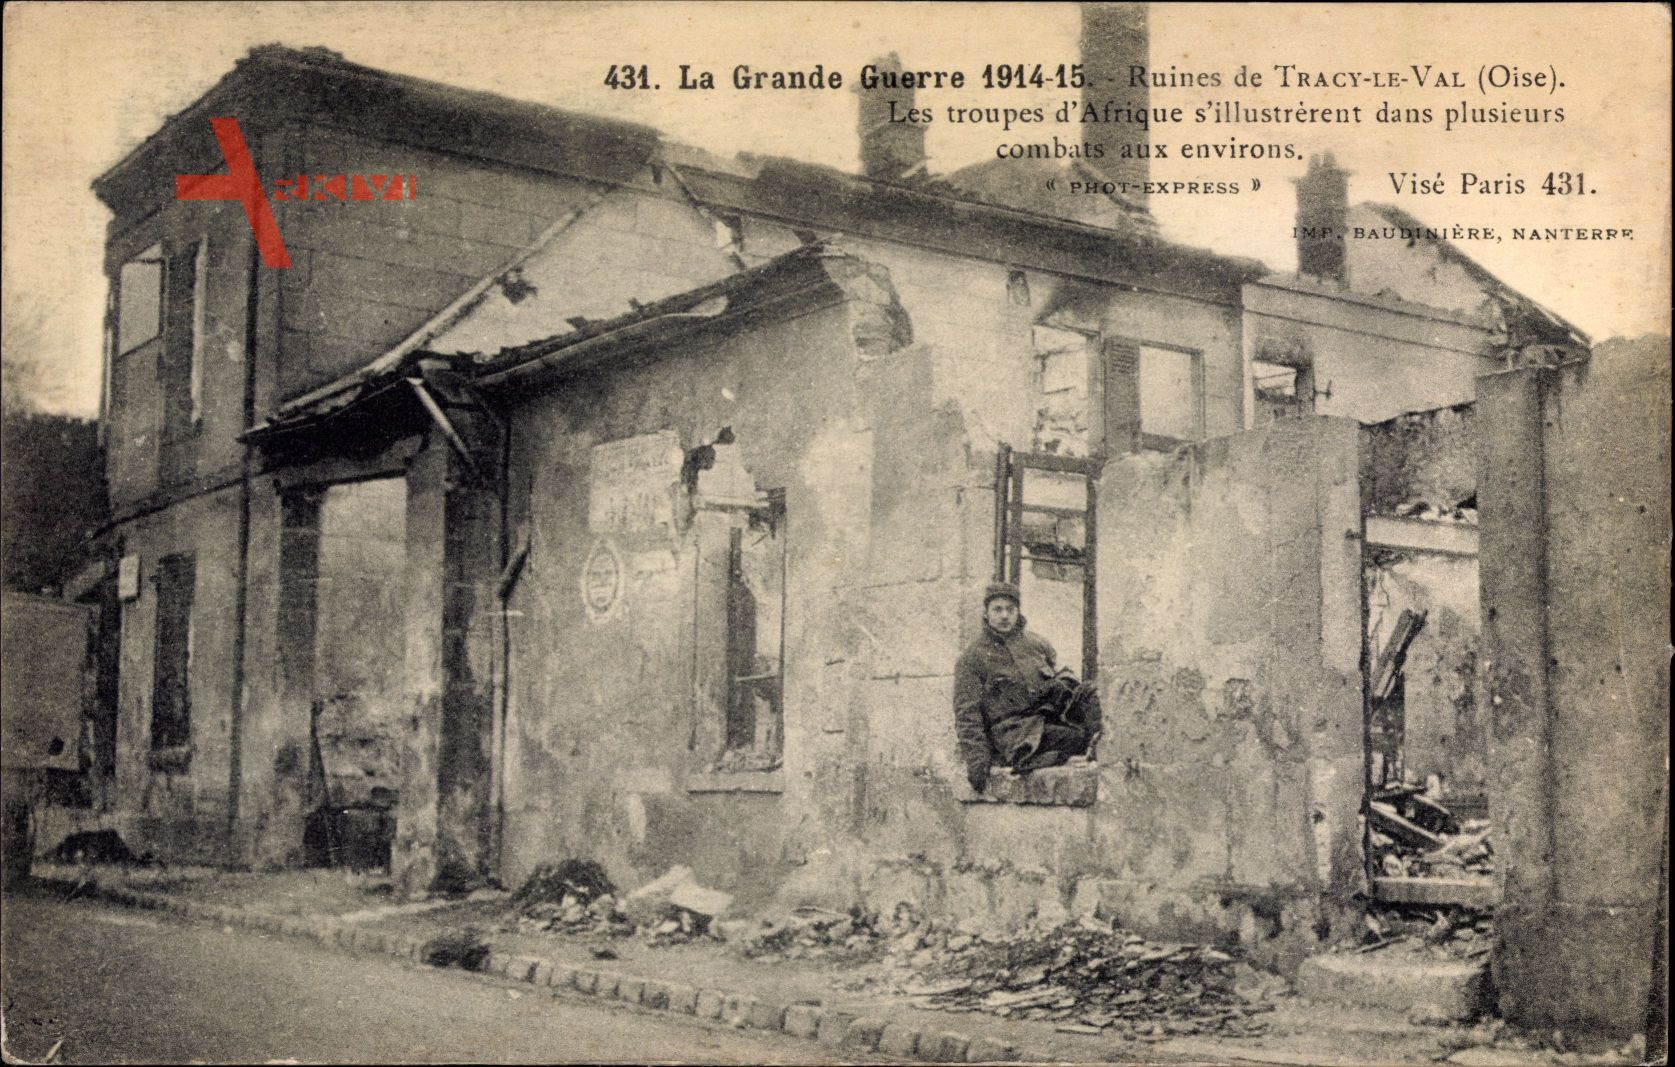 Tracy le Val Oise, Kriegszerstörungen, Soldat im Fenster einer Hausruine